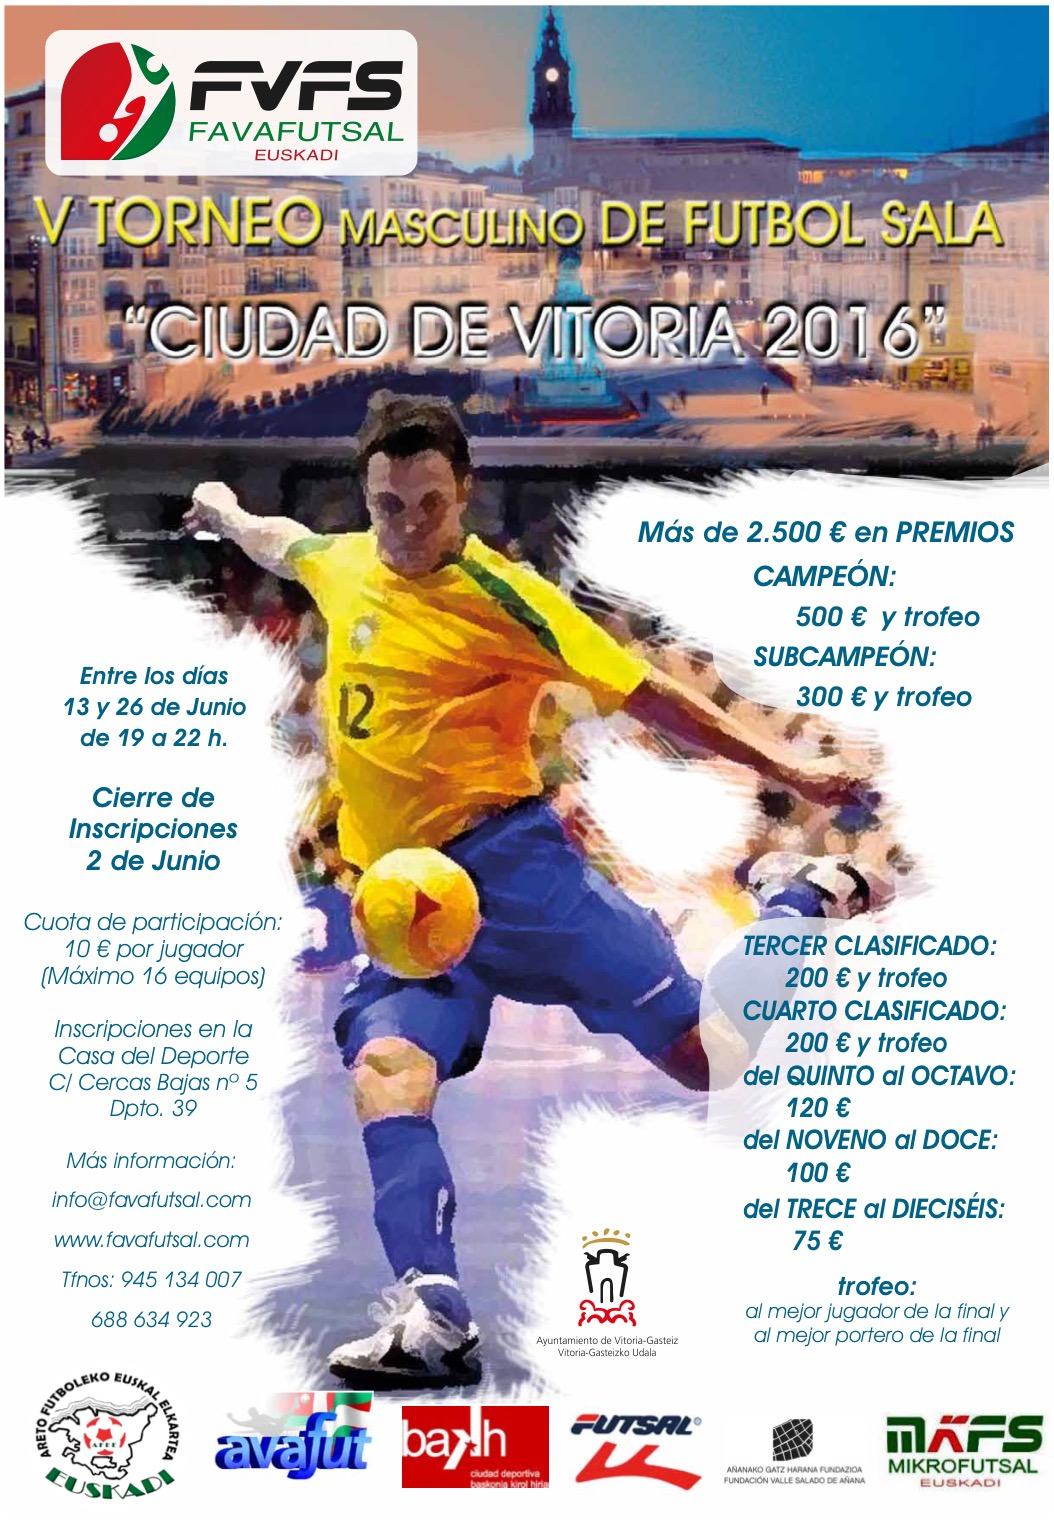 V Torneo de verano masculino de Futsal "Ciudad de Vitoria" con más de 2.000€ en premios económicos y trofeos. Todos los participantes obtendrán premio: Campeón 500€ ; Ultimo 75€. Del 13 al 19 de junio. Inscripciones cerradas.